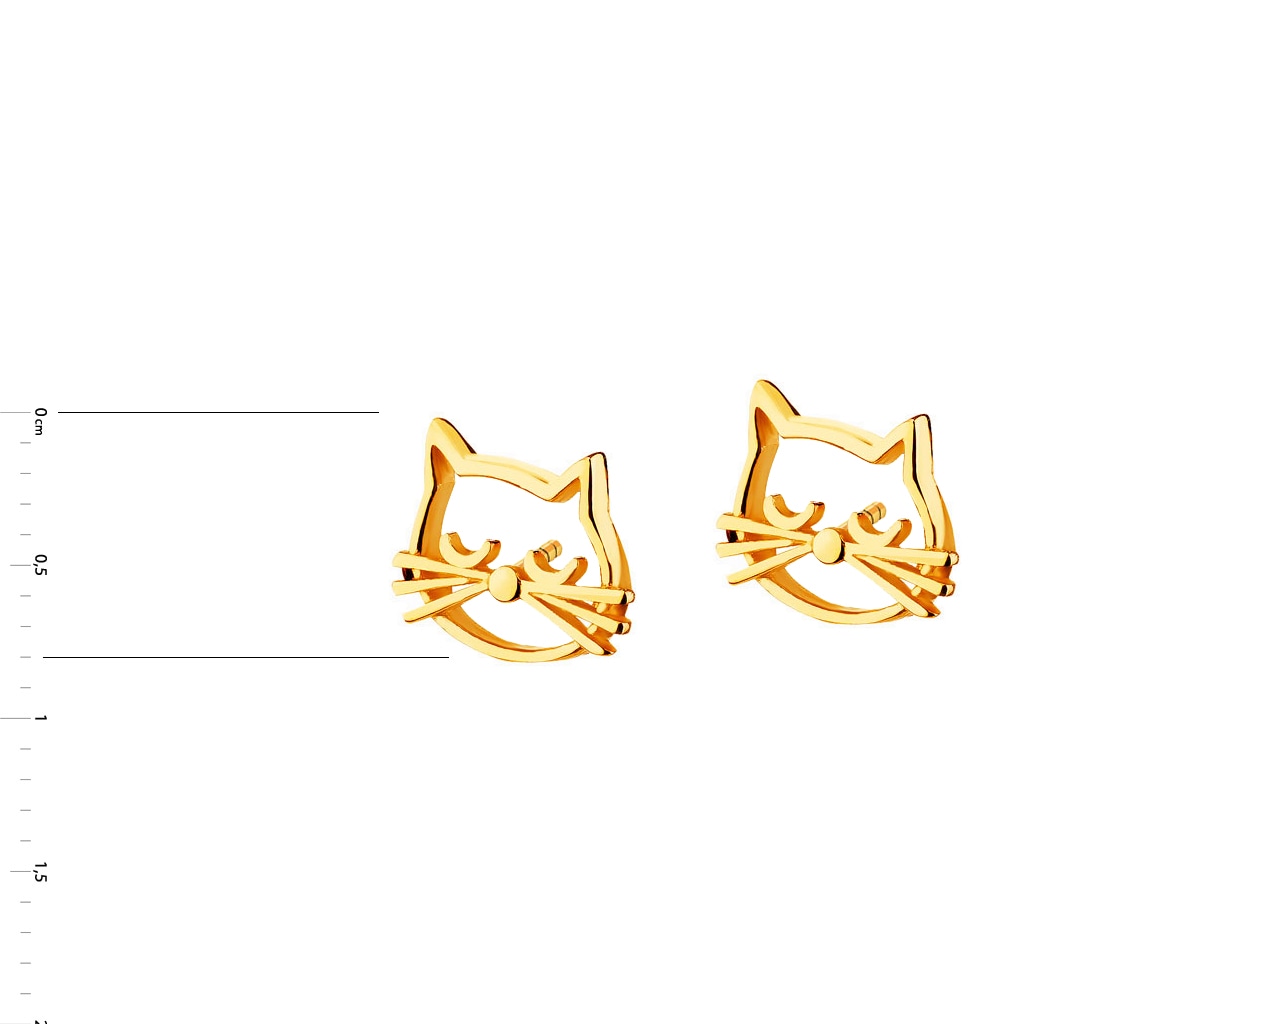 Złote kolczyki - koty